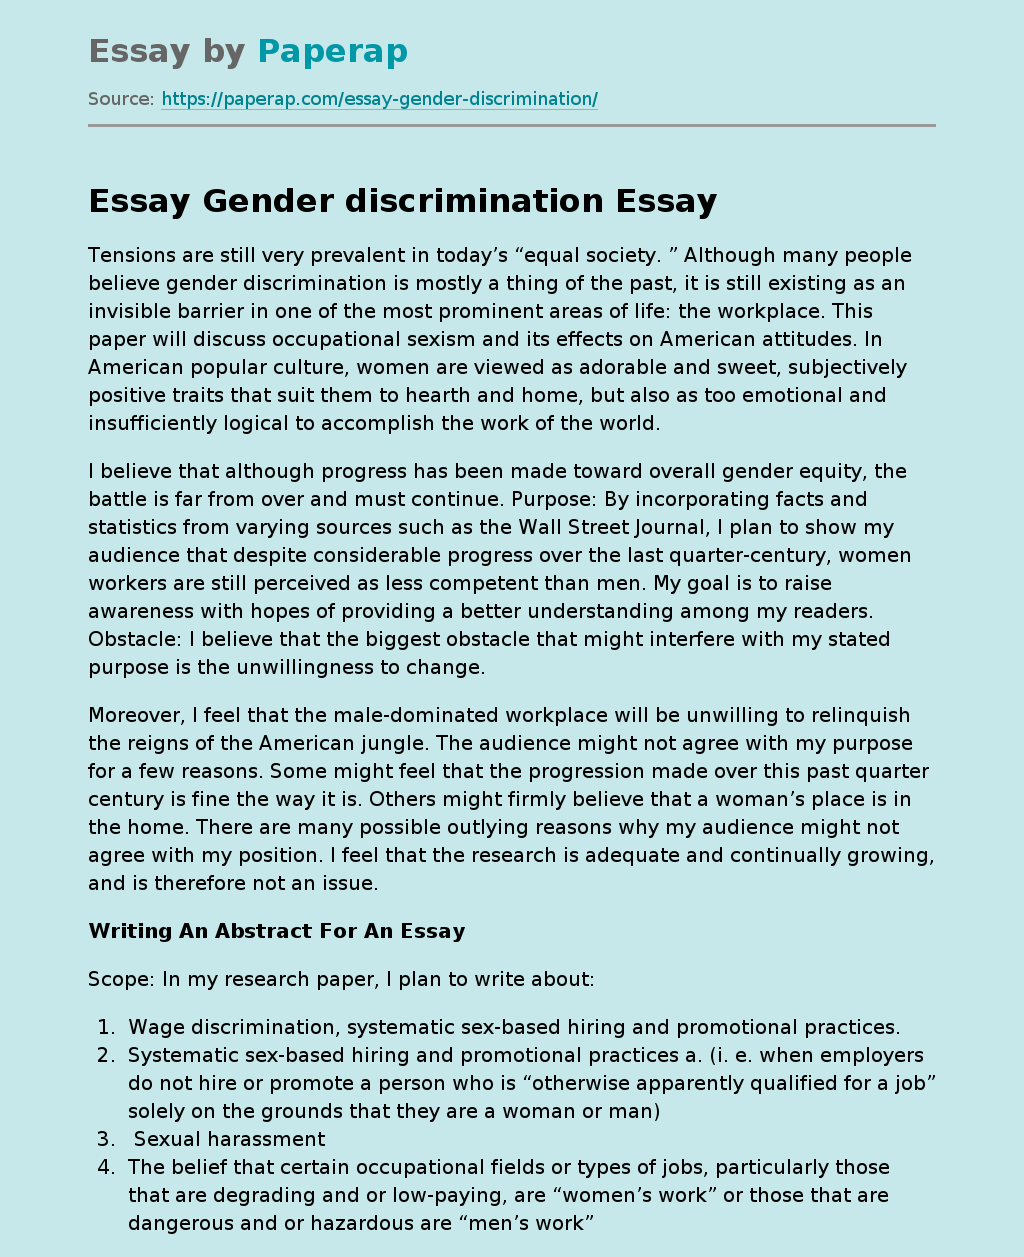 Essay Gender discrimination